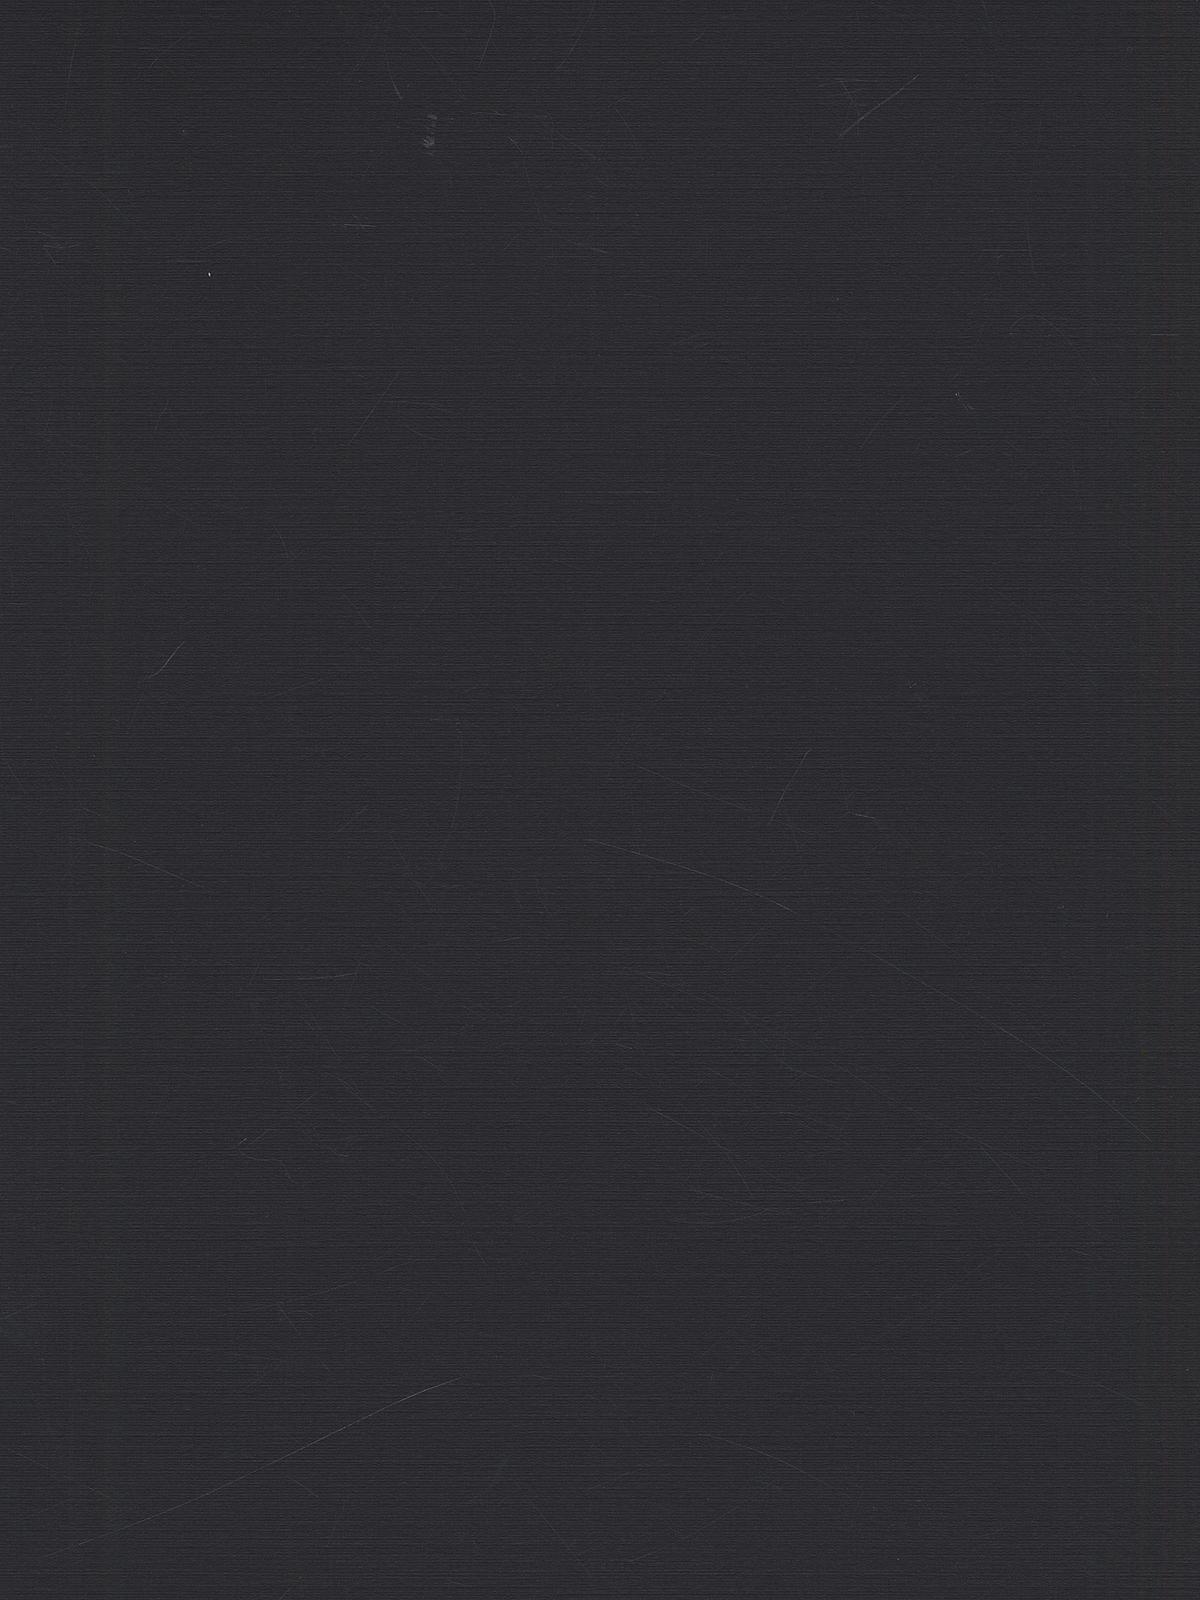 Classic Cardstock 8 1 2 In. X 11 In. Black Sheet